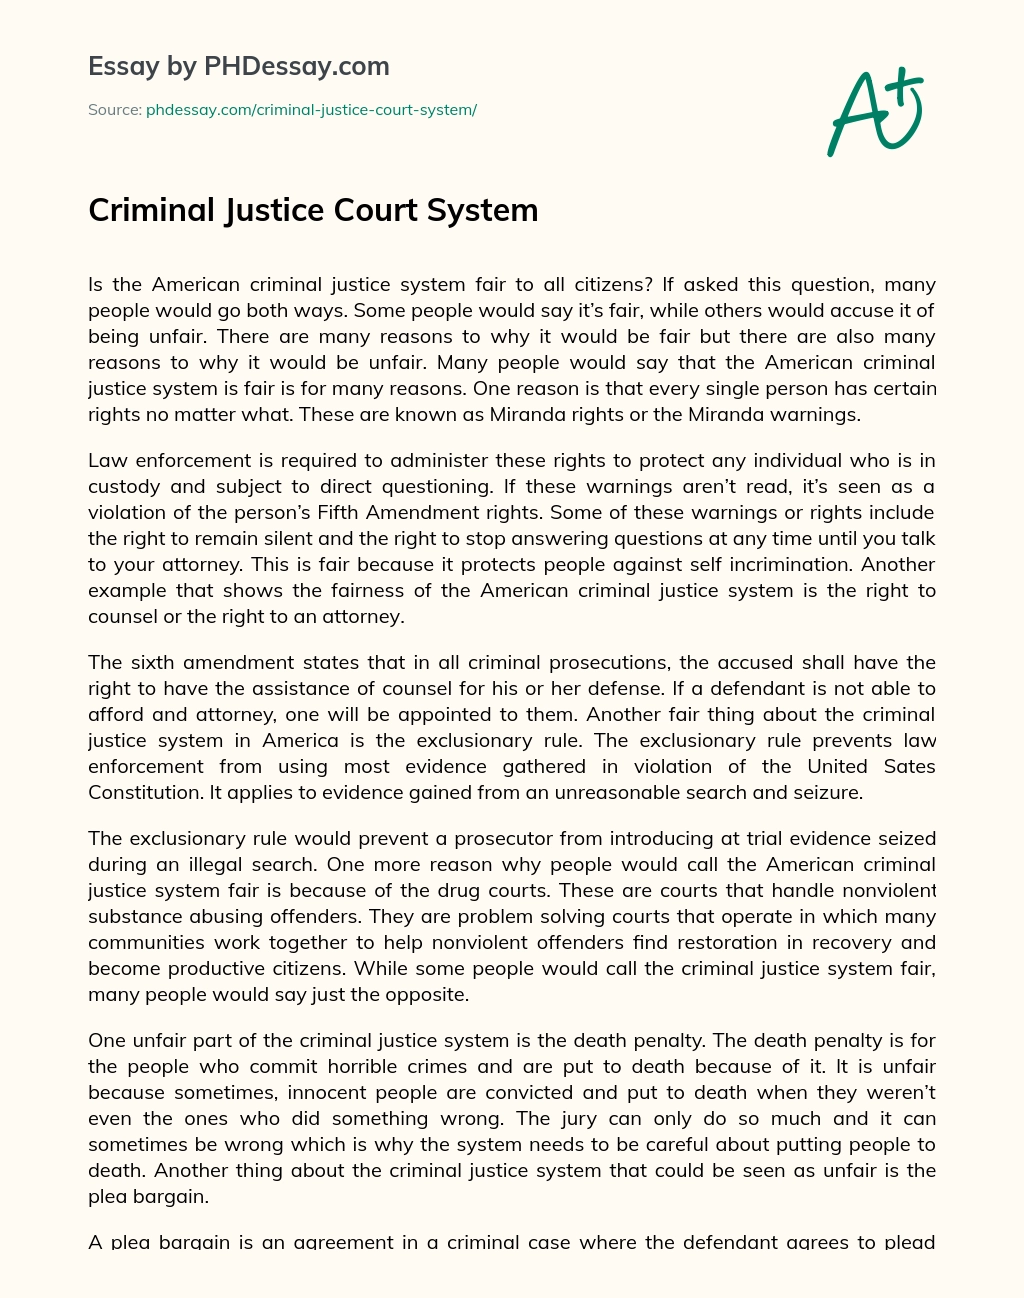 Criminal Justice Court System essay